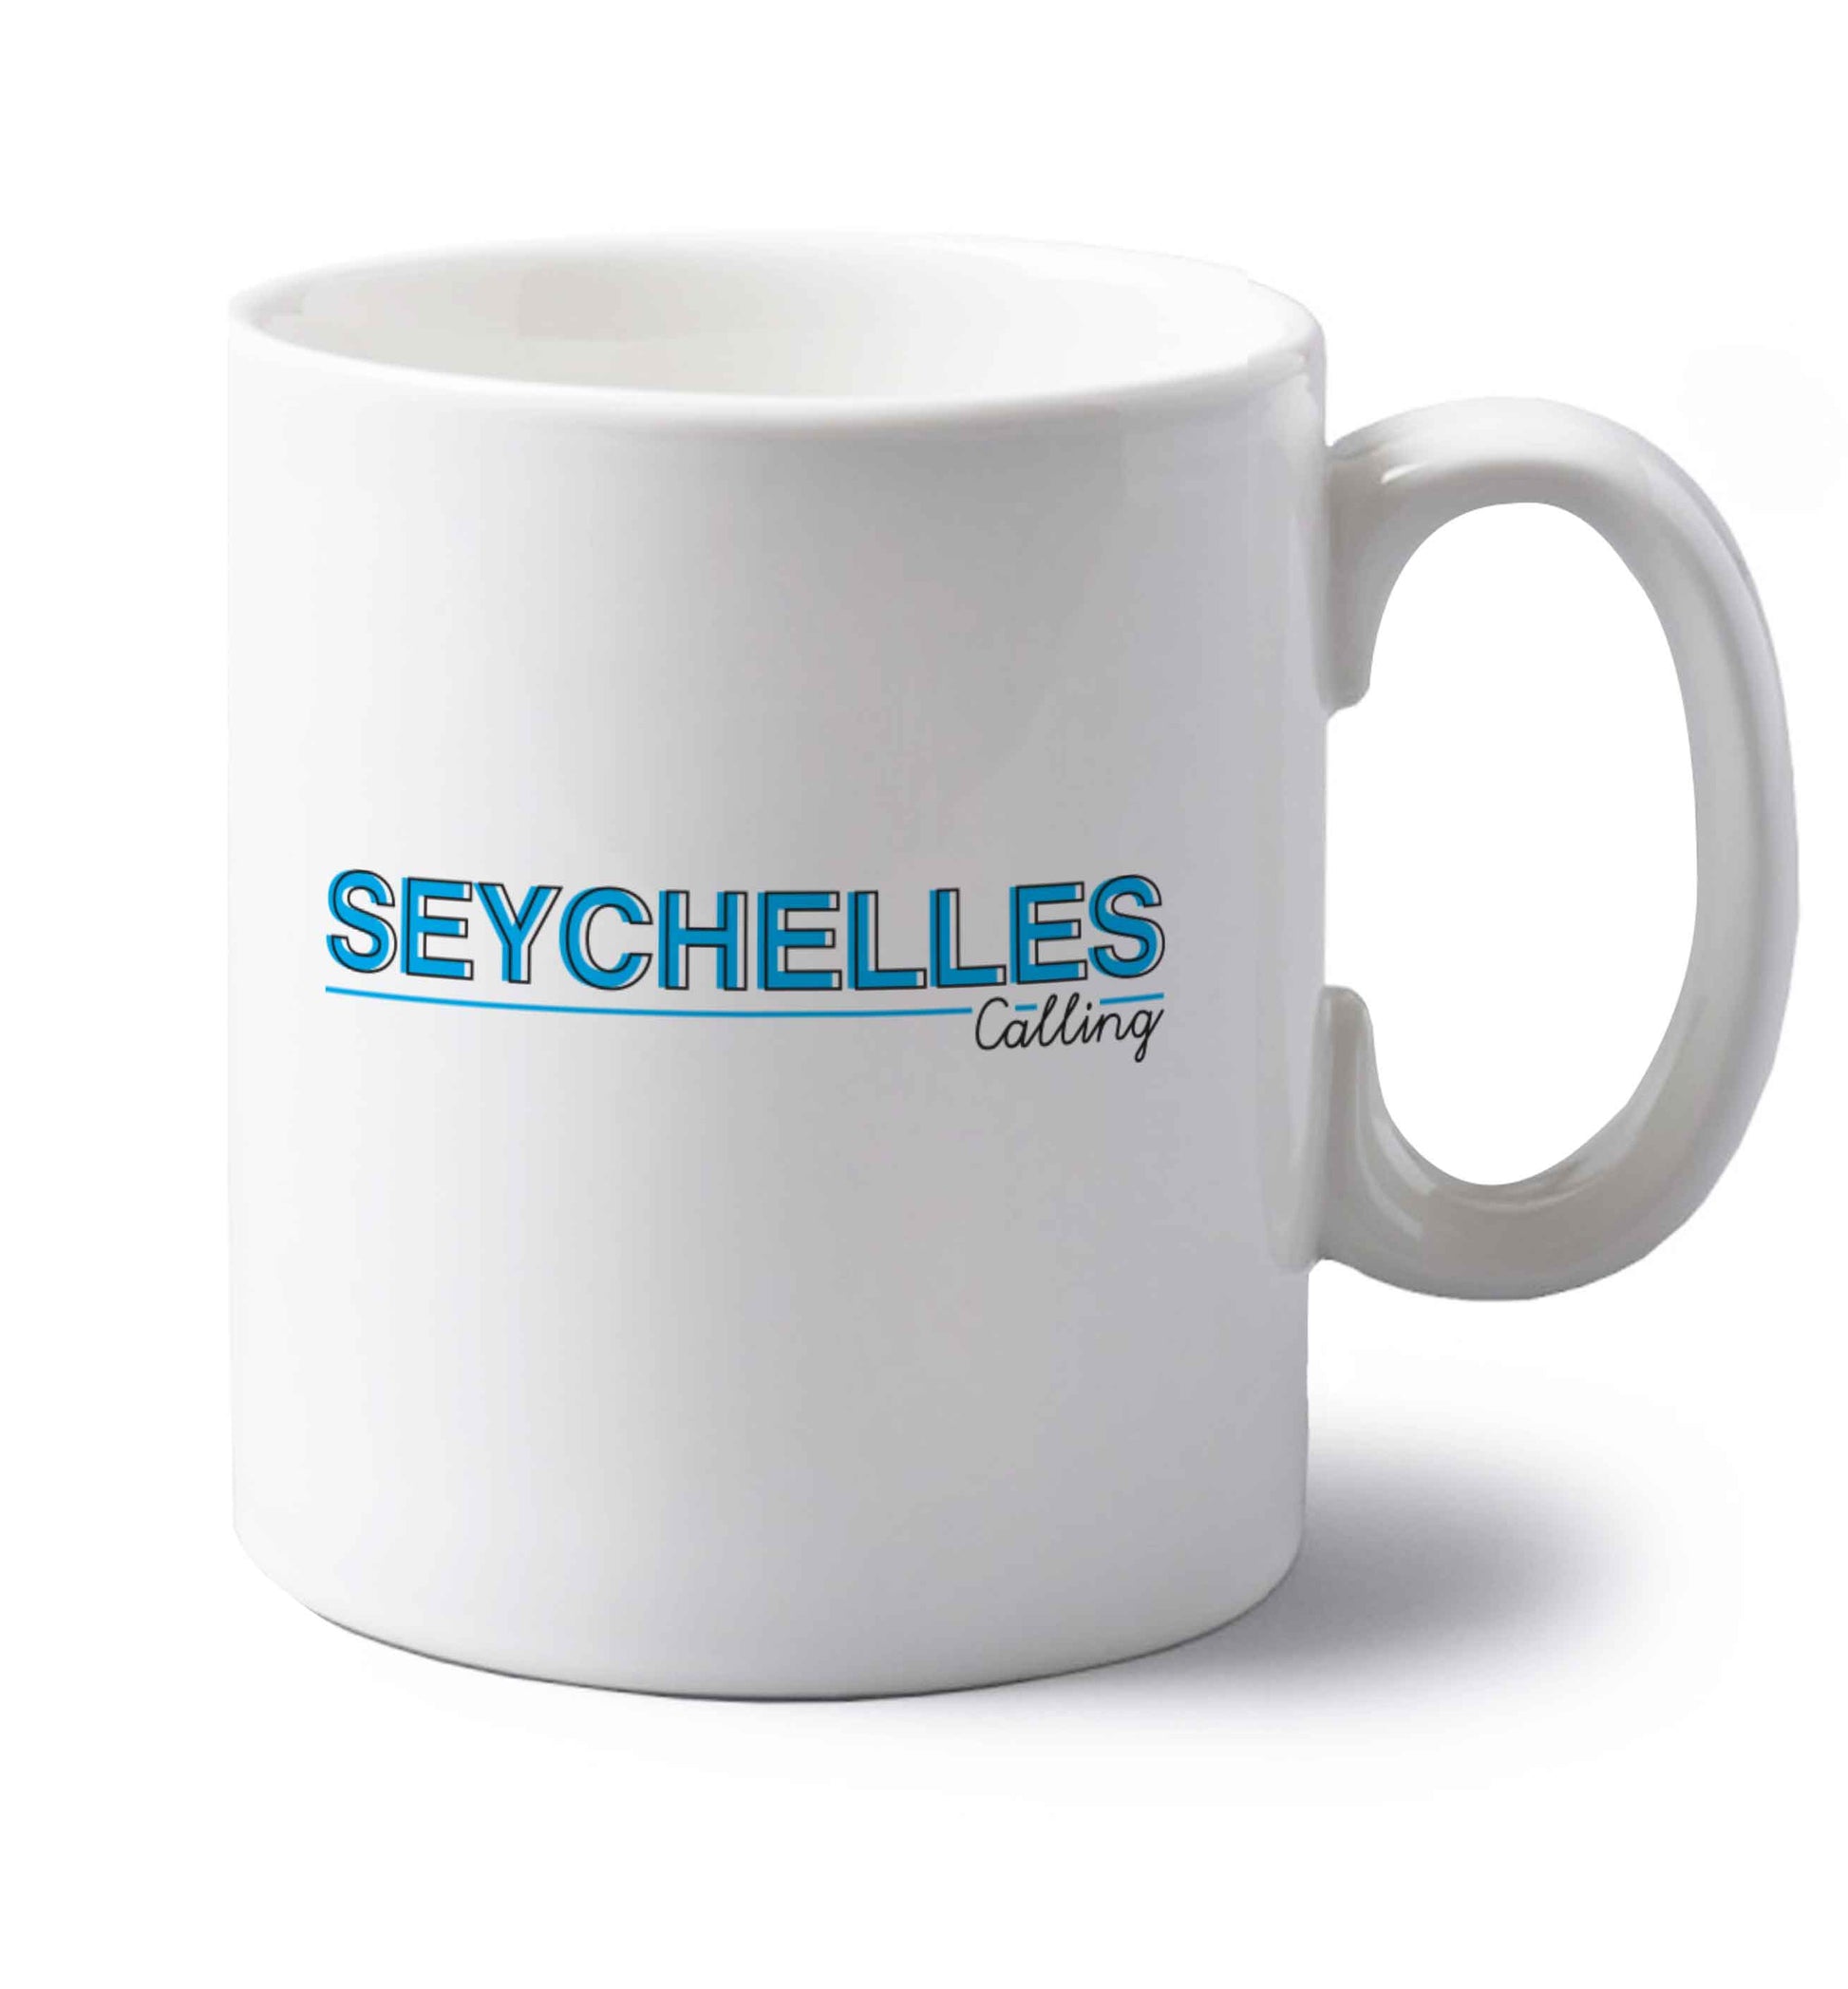 Seychelles calling left handed white ceramic mug 